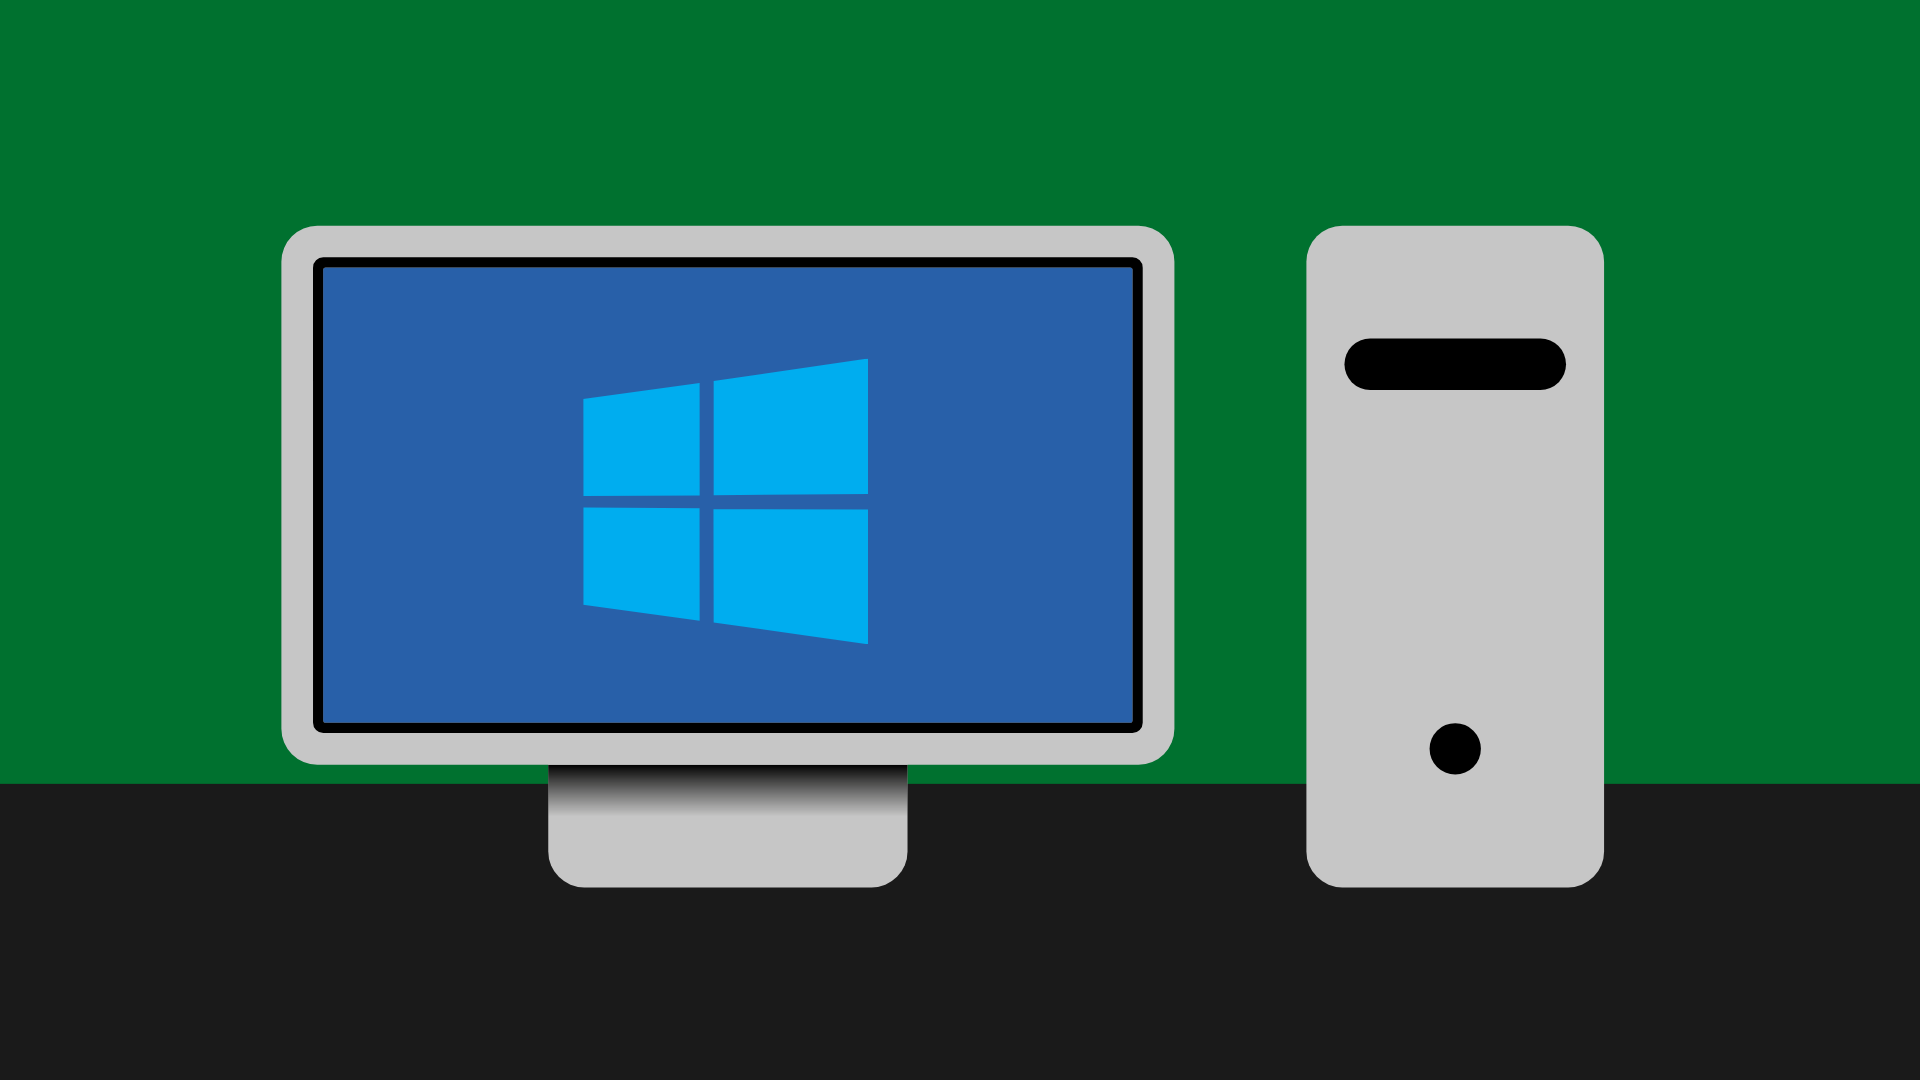 Ein Desktop PC mit Monitor wird gezeigt. Auf dem Monitor ist das Logo von Windows.